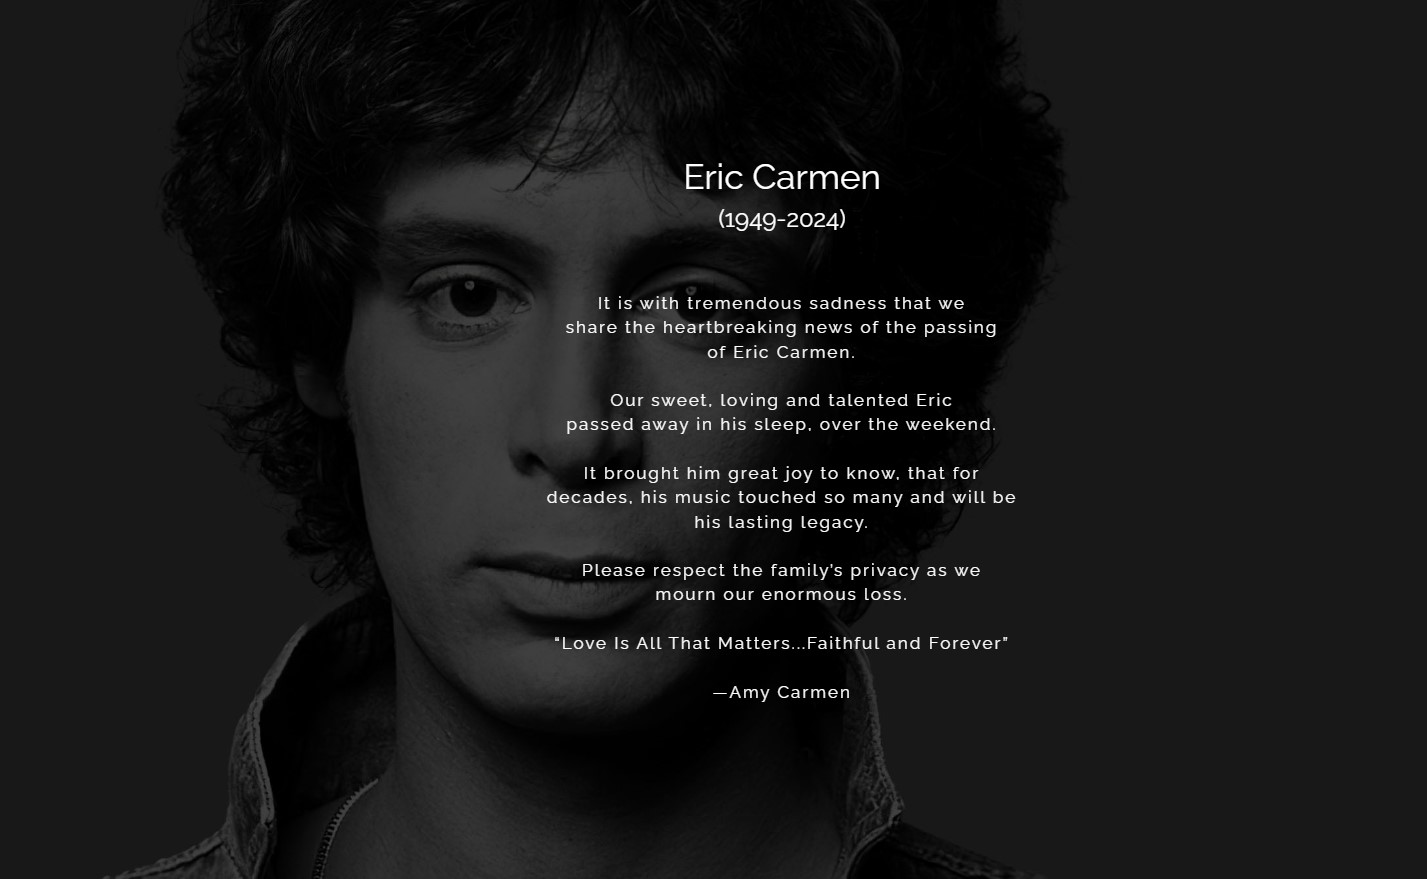 Στιγμιότυπο από τον ιστότοπο του Eric Carmen